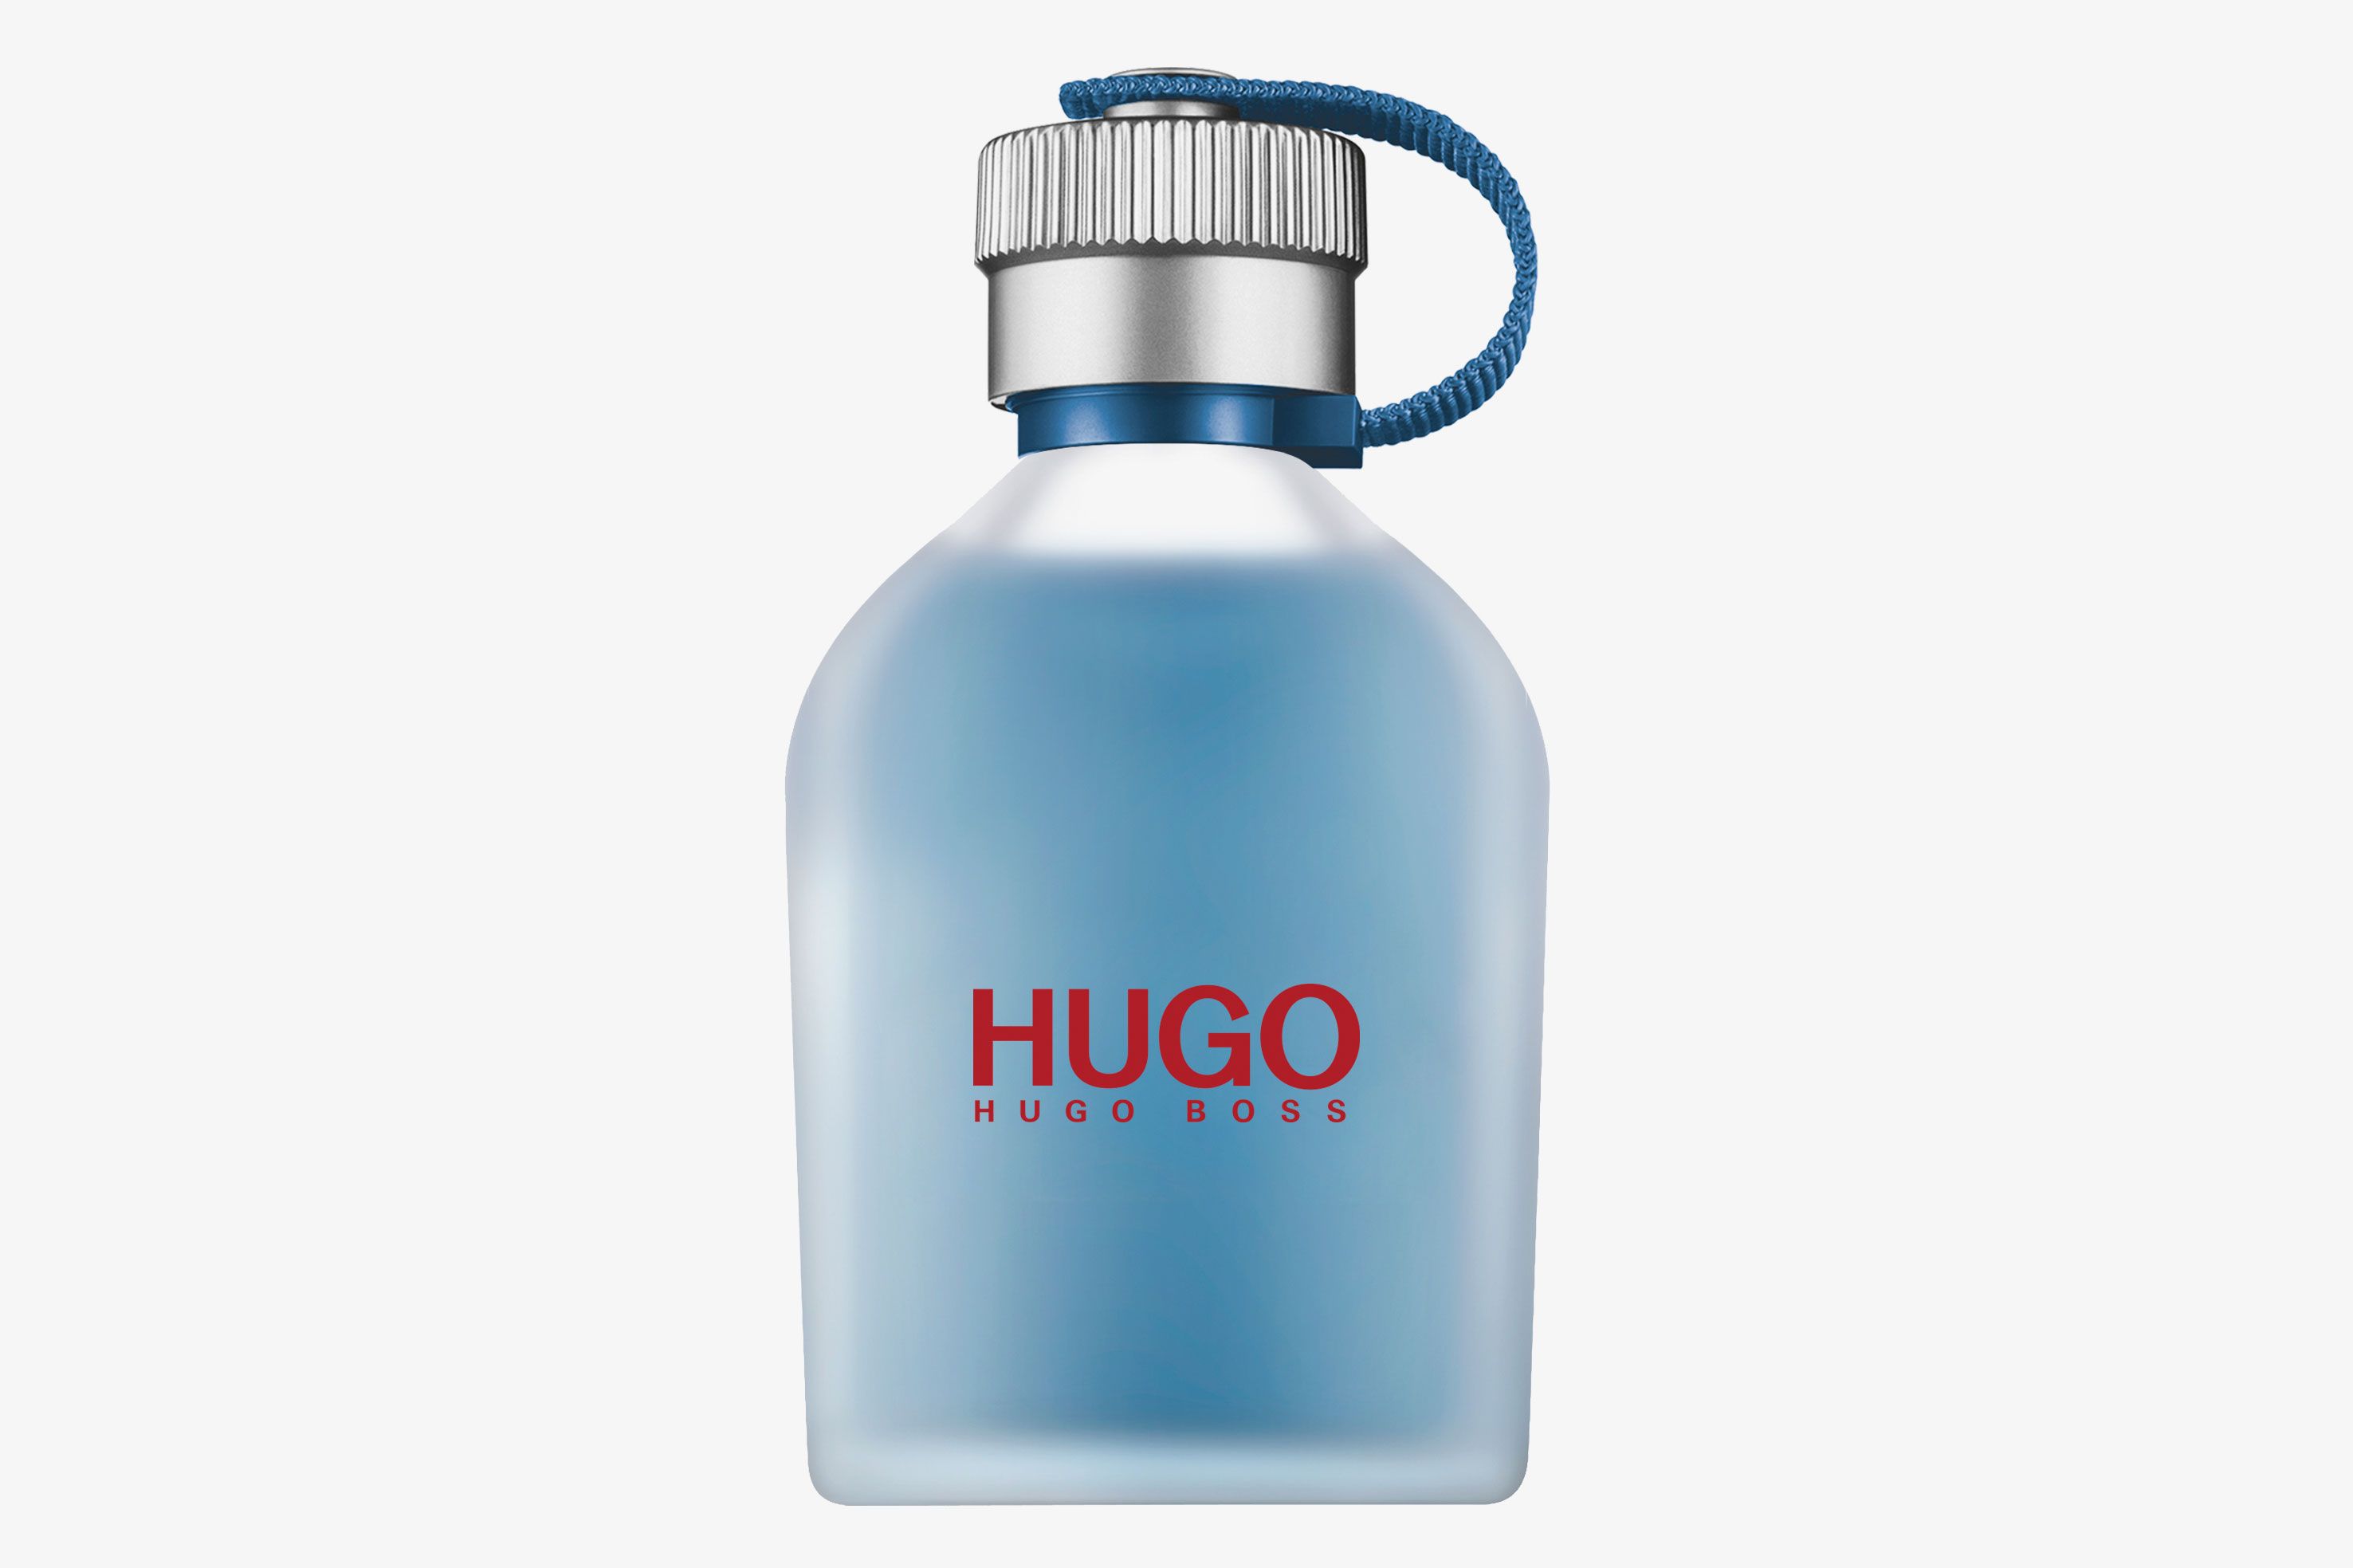 Boss hugo boss описание аромата. Туалетная вода Hugo Boss Hugo man. Hugo Boss мужской Hugo туалетная вода (EDT) 75мл. Hugo Boss Hugo Eau de Toilette 125ml. Hugo Boss Now 75ml.